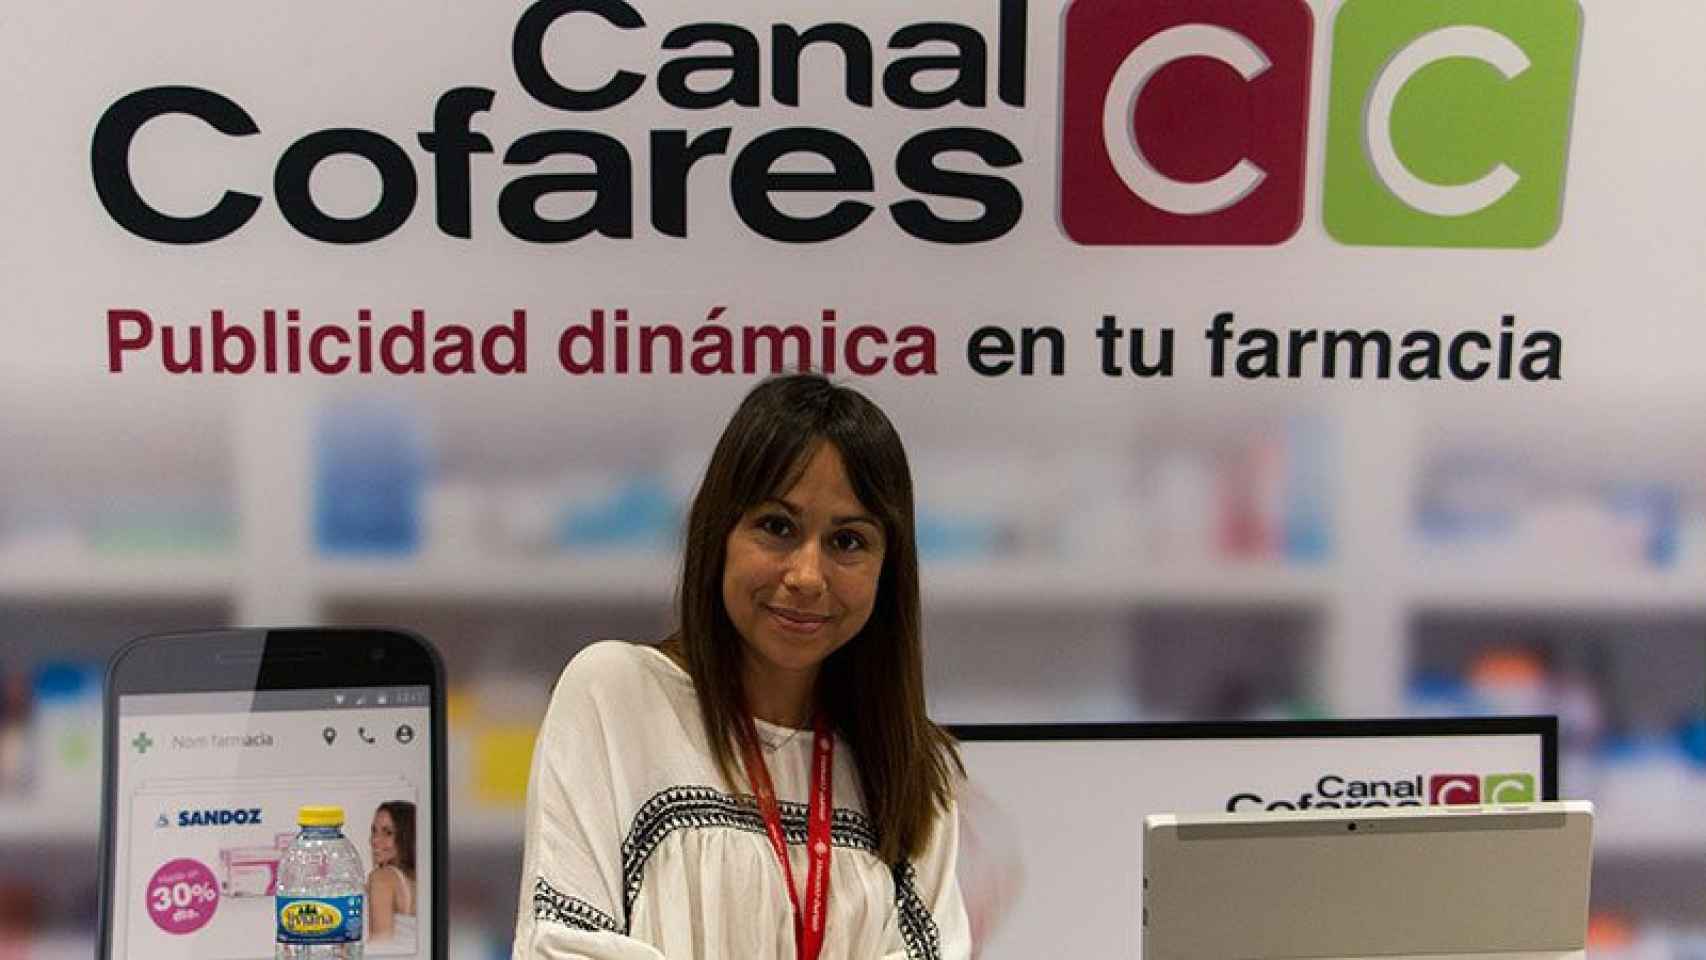 Imagen promocional del Canal Cofares, que ofrece a las farmacias pantallas digitales, publicidad personalizada y una 'app'.